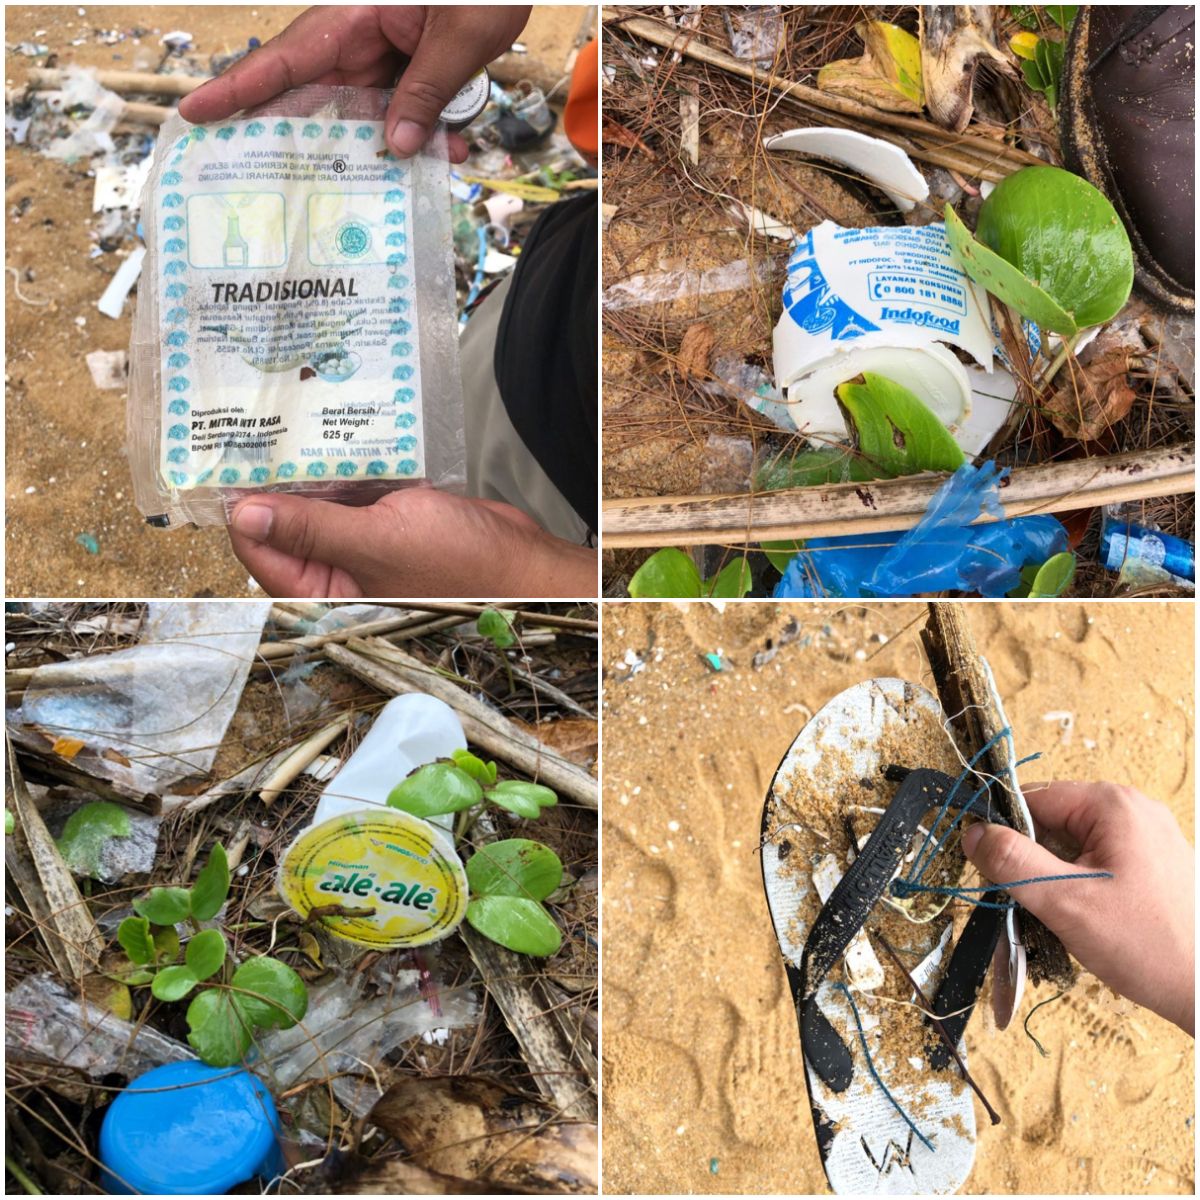 Sampah-sampah plastik dari Indonesia yang ditemukan oleh Ivana